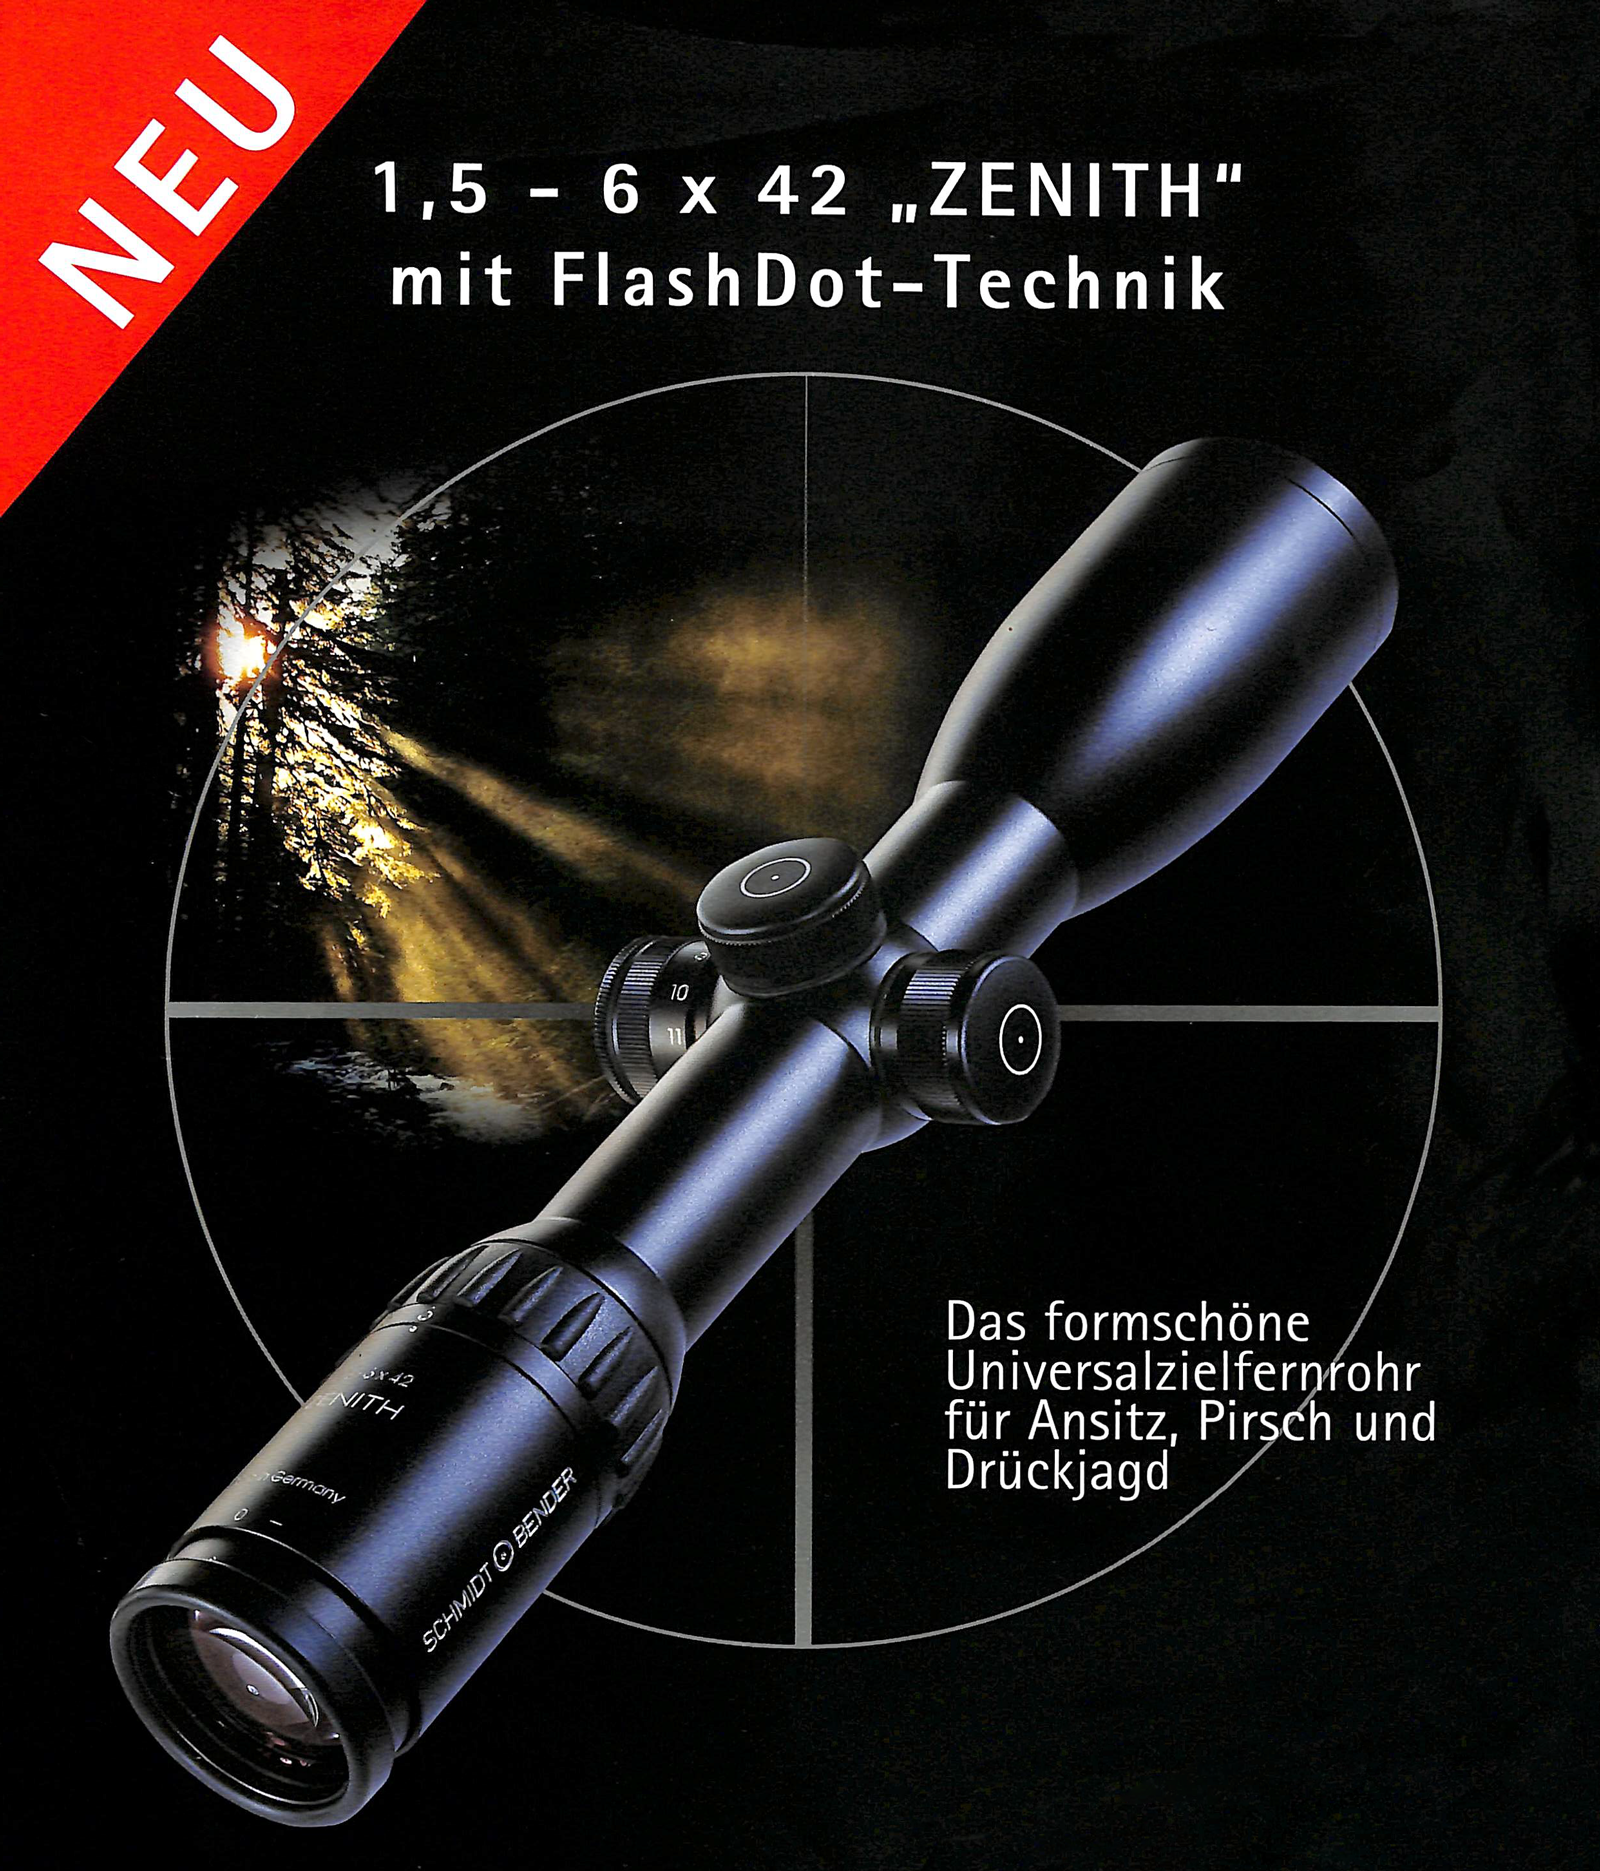 1.5-6x42 Zenith with FlashDot illumination